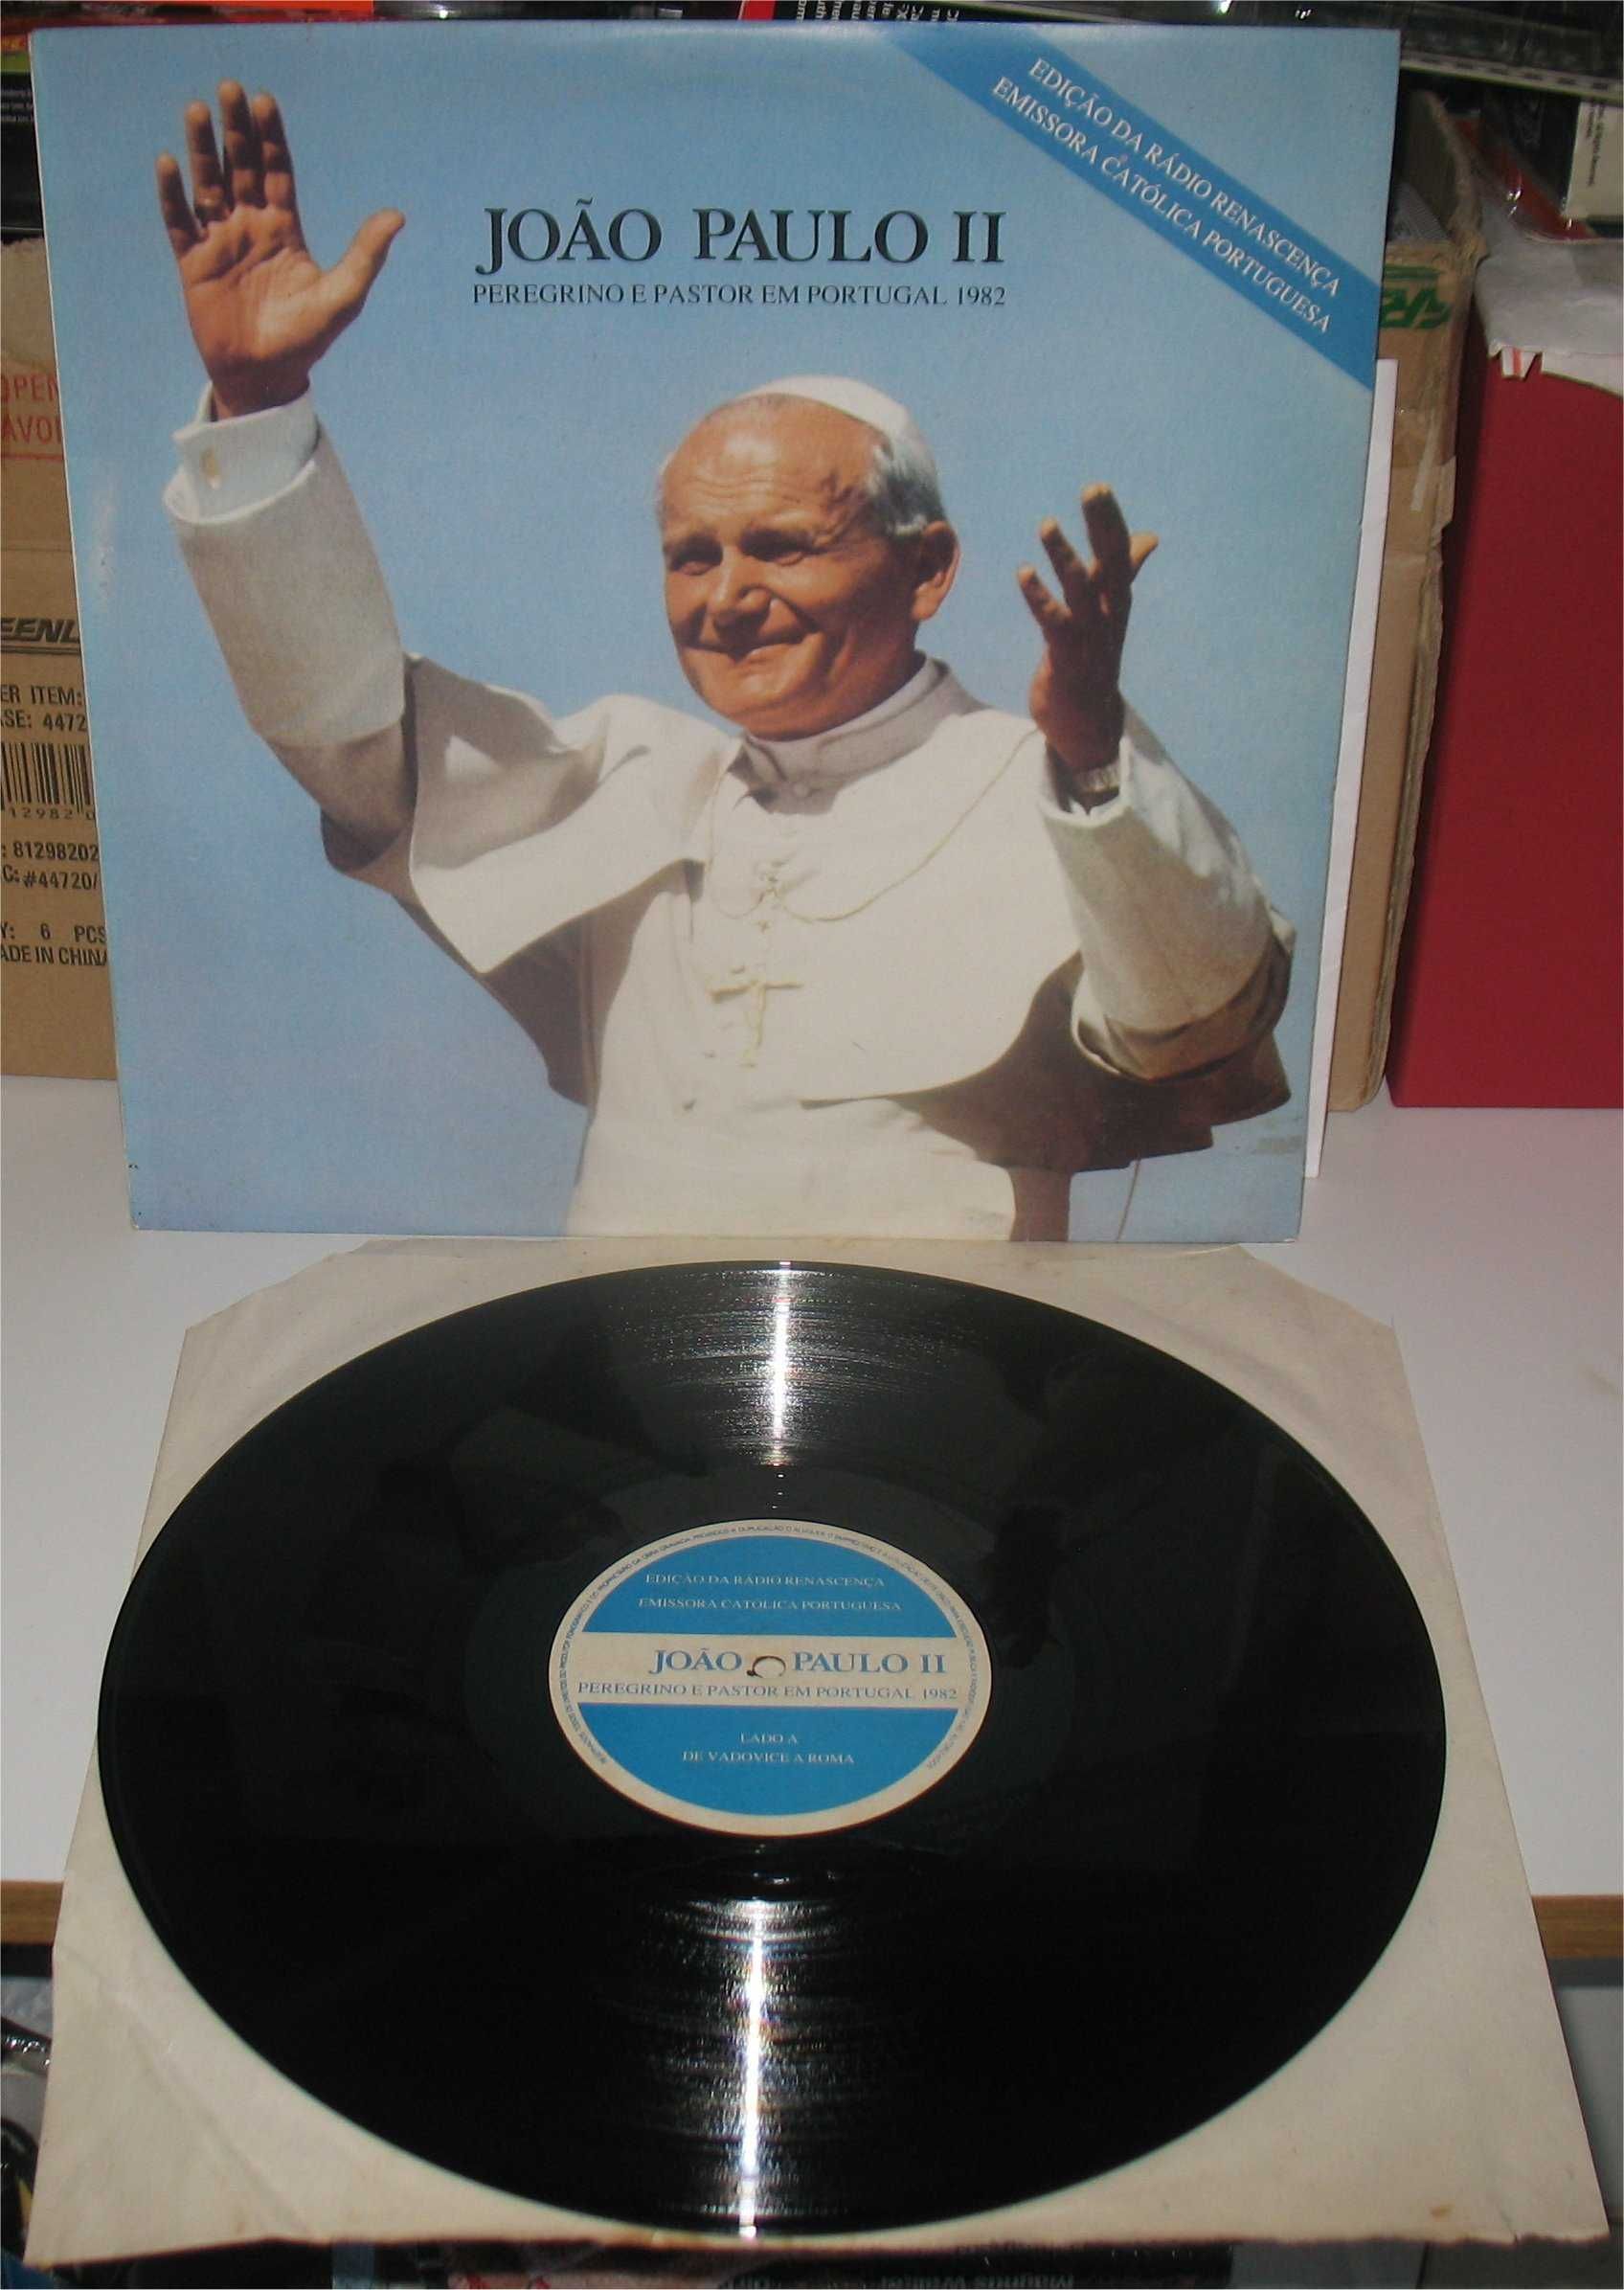 João Paulo II - Peregrino e Pastor em Portugal 1982 - LP